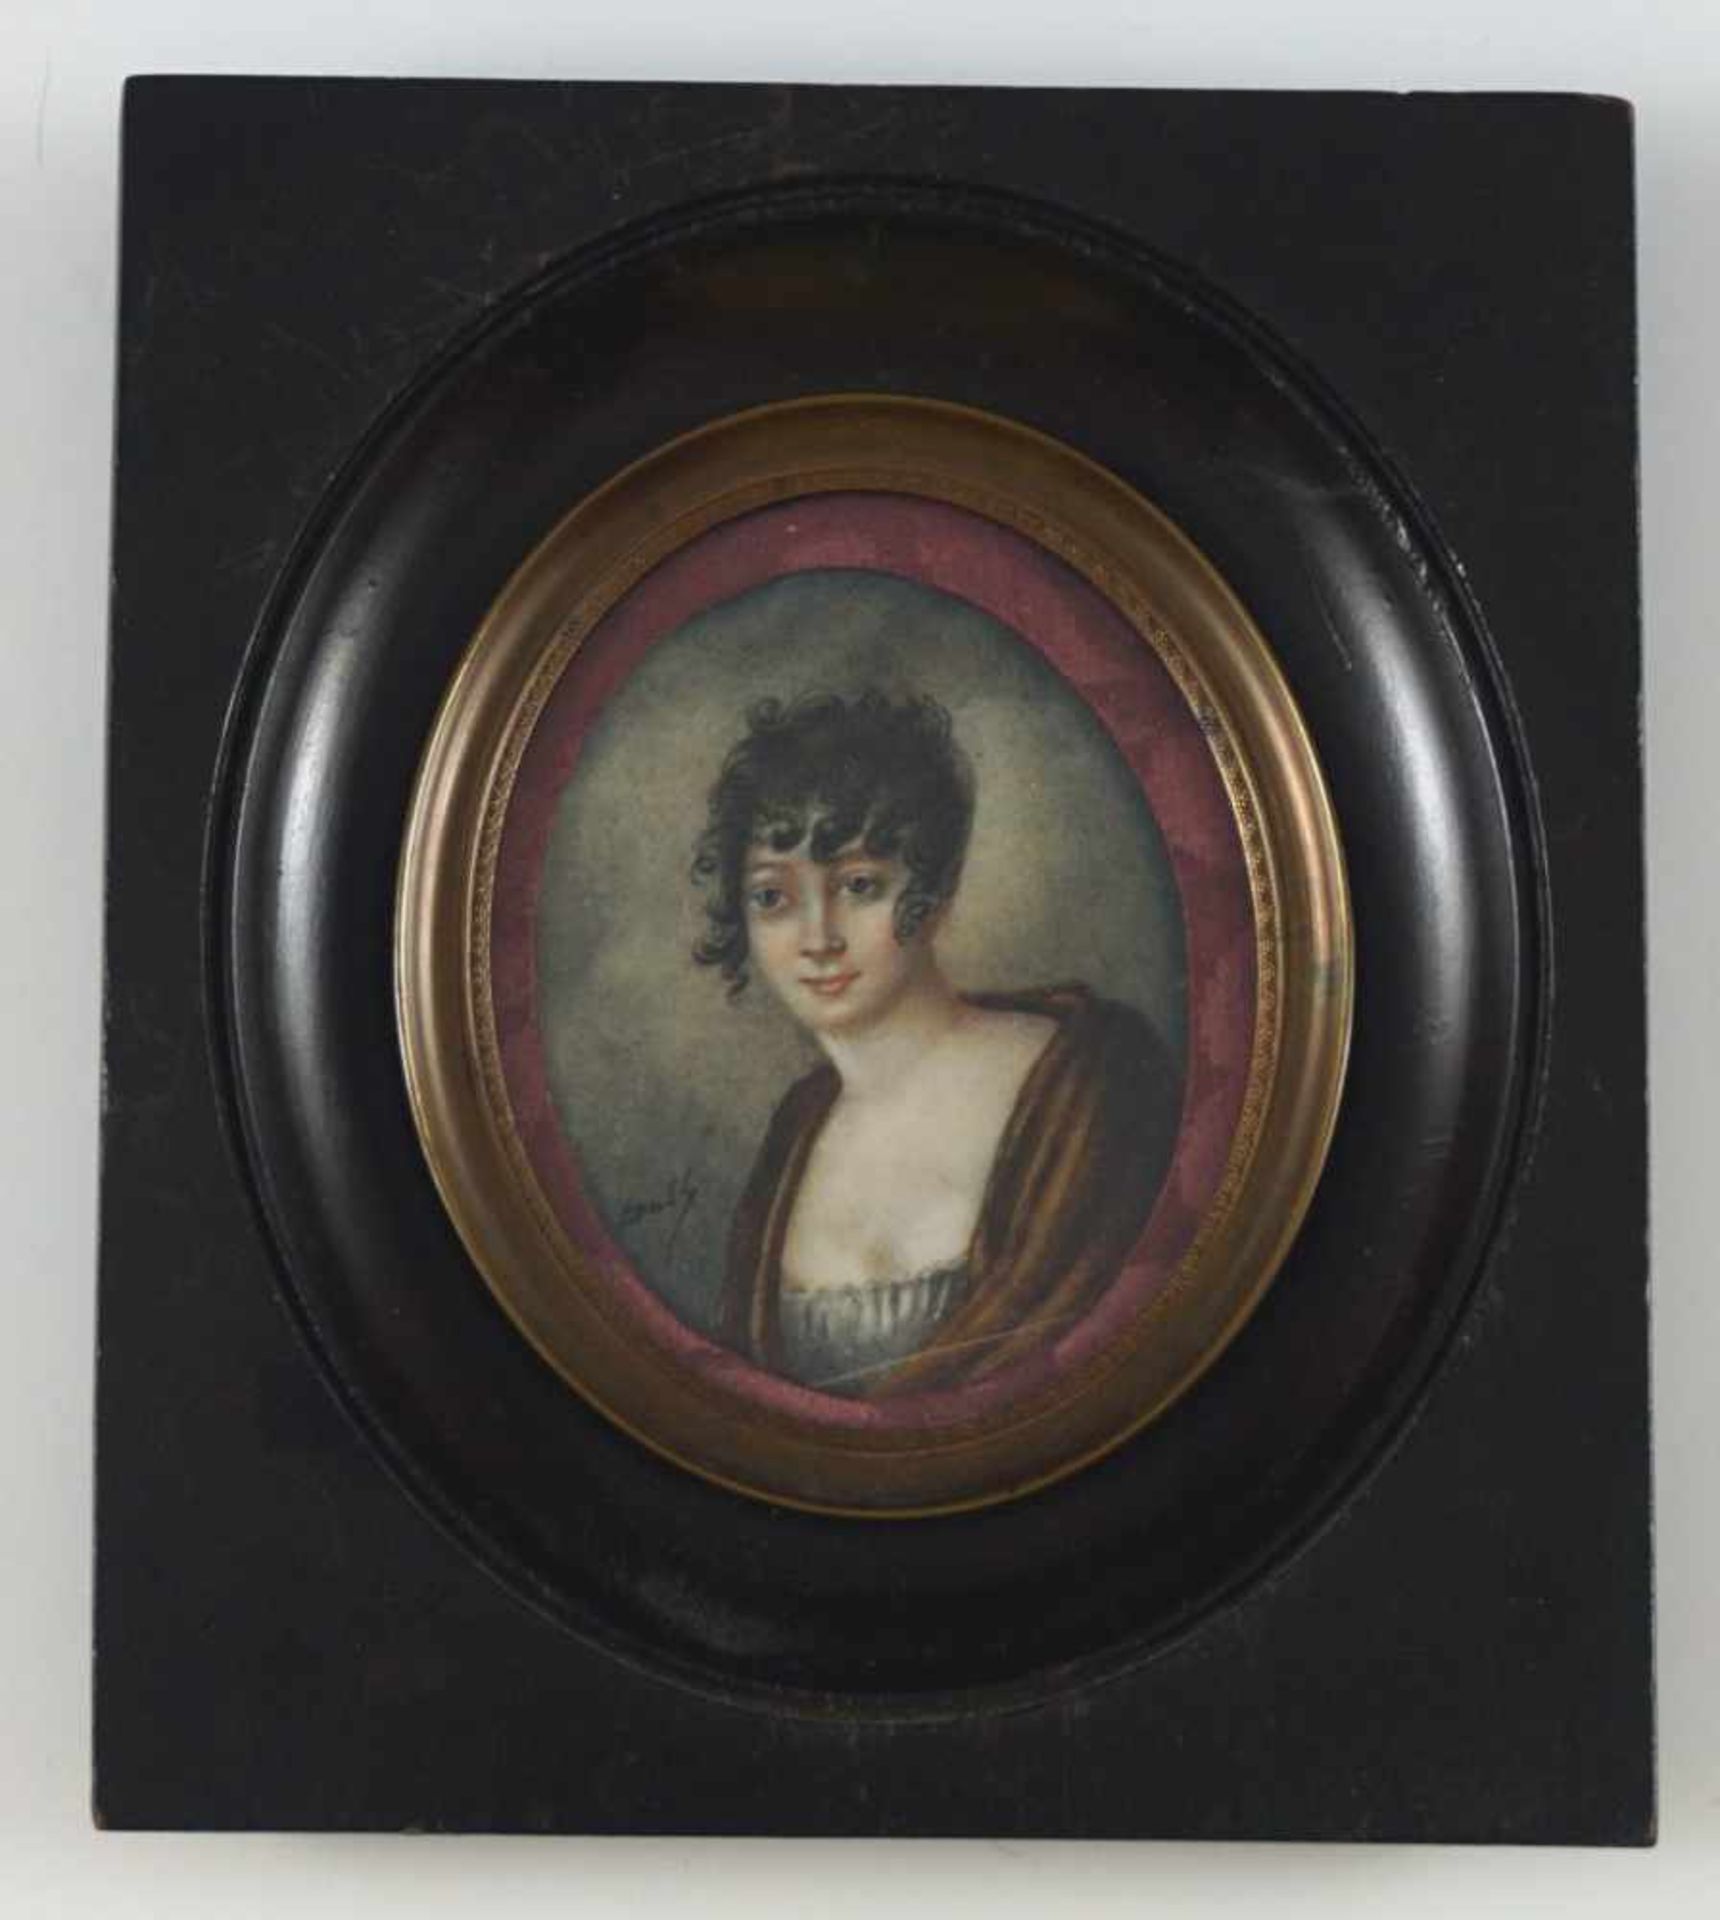 Damenportrait mit Stöpsellocken und tiefem Dekolleté. Auf Elfenbein. Um 1900. Oval, 6,5 x 5 cm. R